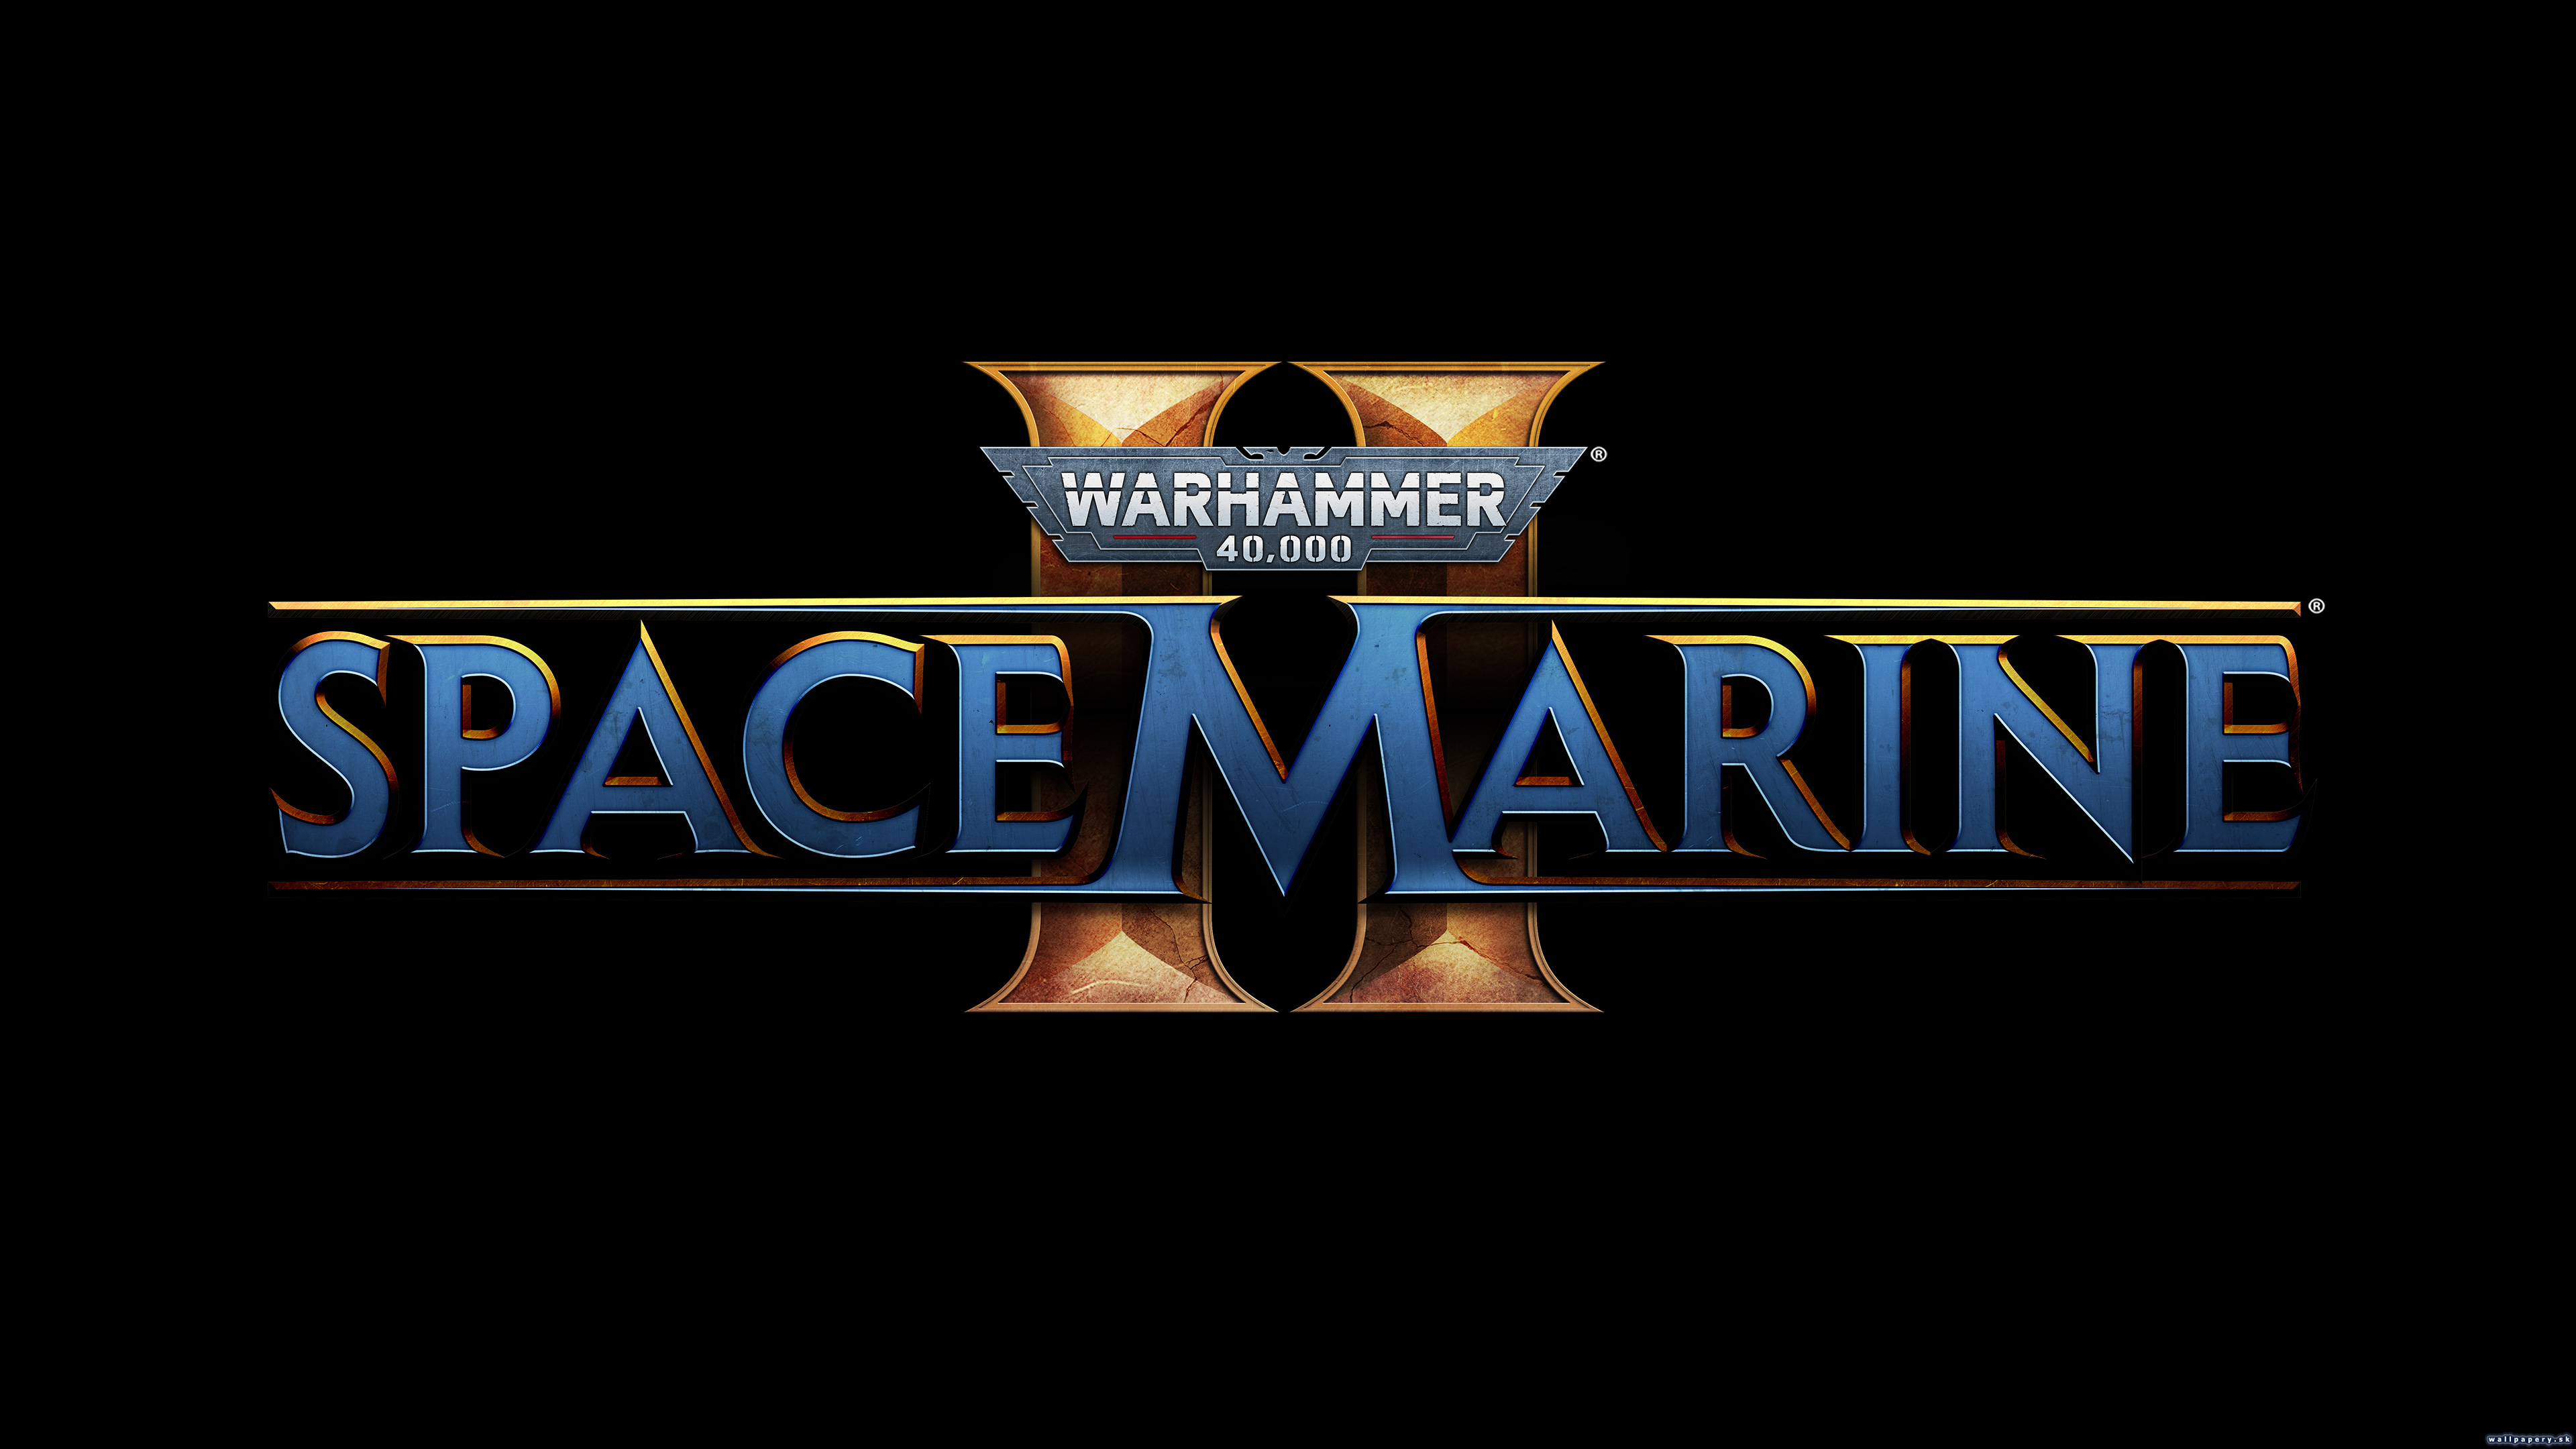 Warhammer 40,000: Space Marine 2 - wallpaper 2